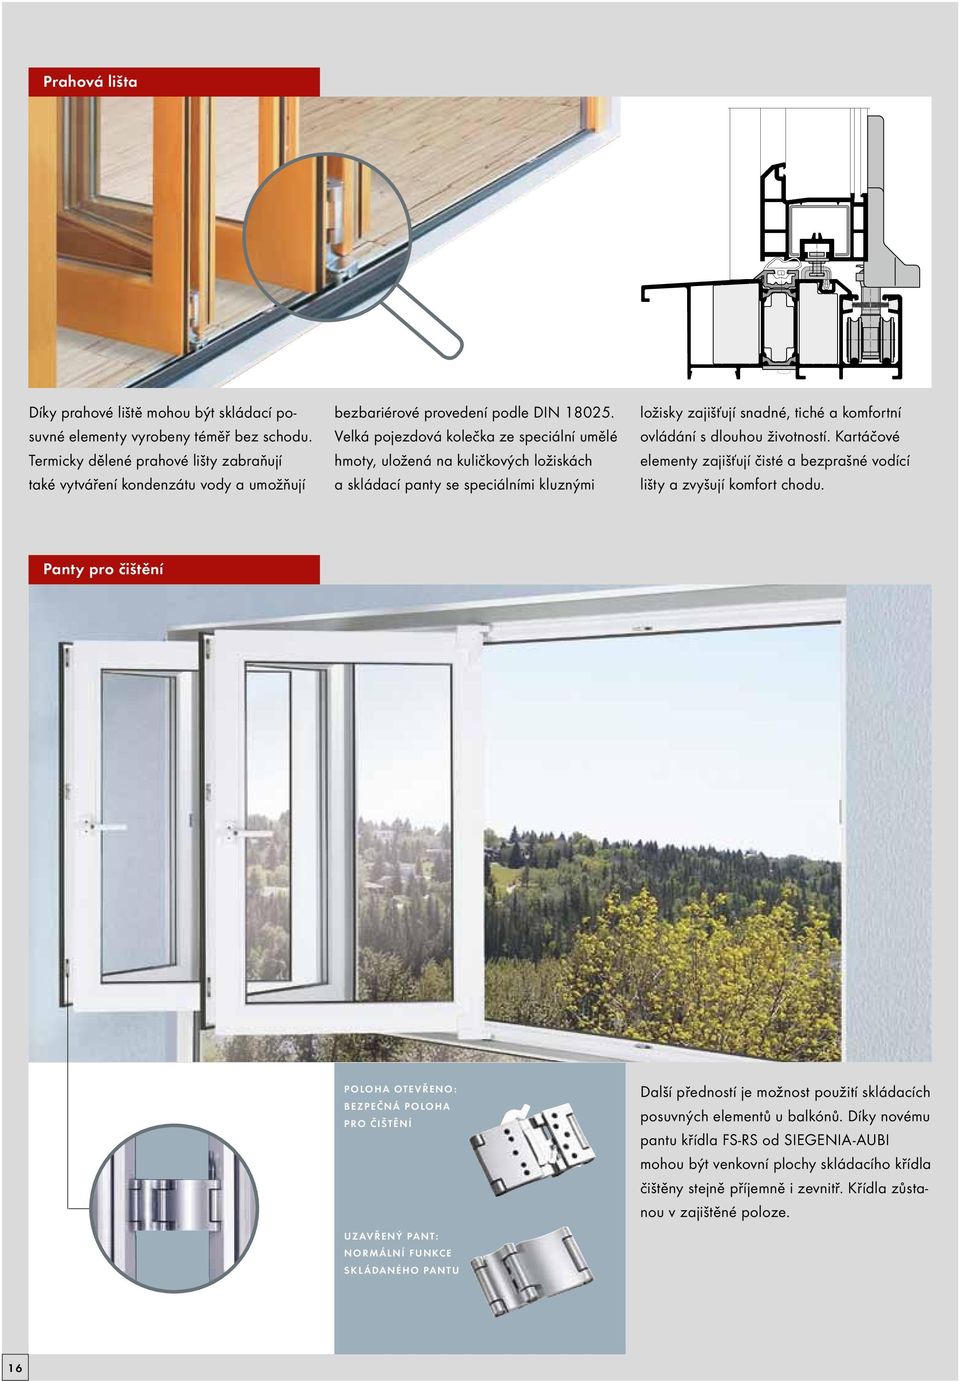 PORTÁL pro dřevěná a plastová okna. - PDF Stažení zdarma